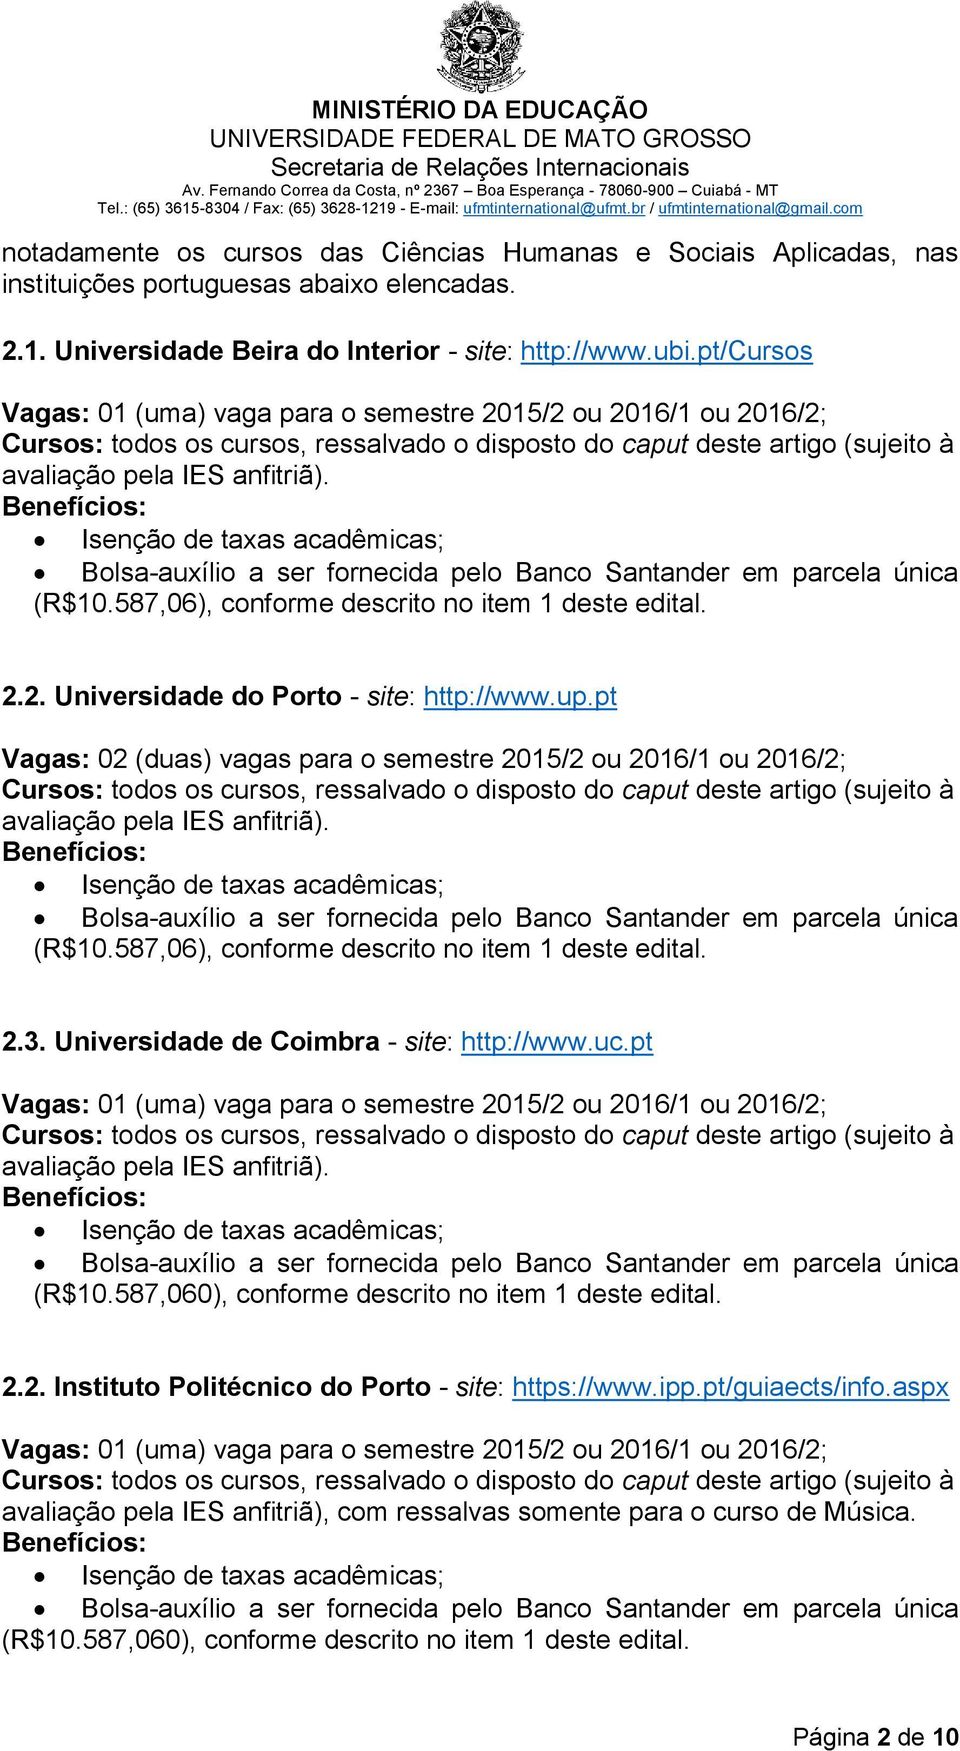 Benefícios: Isenção de taxas acadêmicas; Bolsa-auxílio a ser fornecida pelo Banco Santander em parcela única (R$10.587,06), conforme descrito no item 1 deste edital. 2.